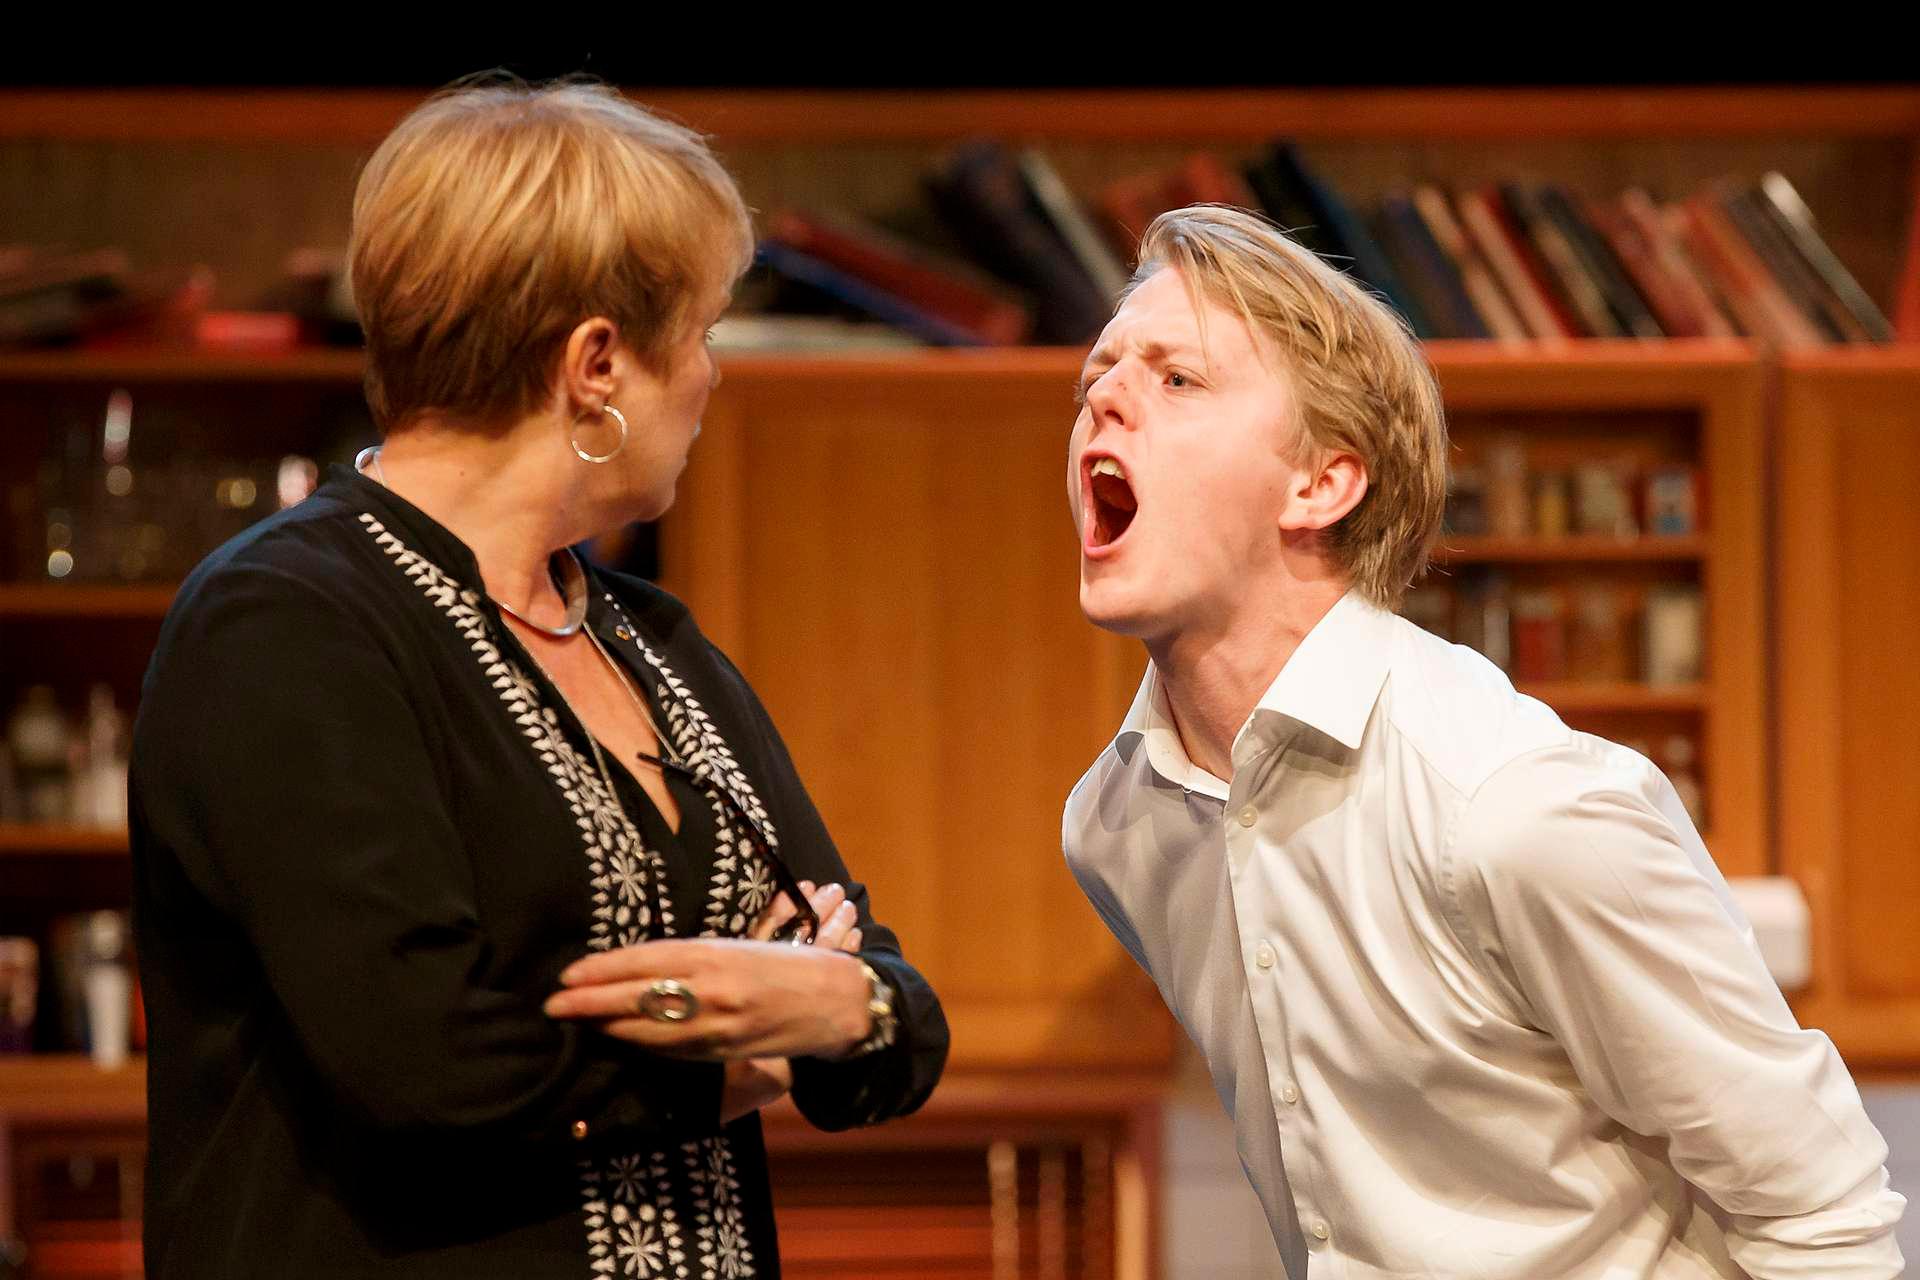 Jonas Strand Gravli og Victoria Svendsen spiller mor og sønn i det australske stykket «Vrede» som settes opp på Centralteatret i Oslo.